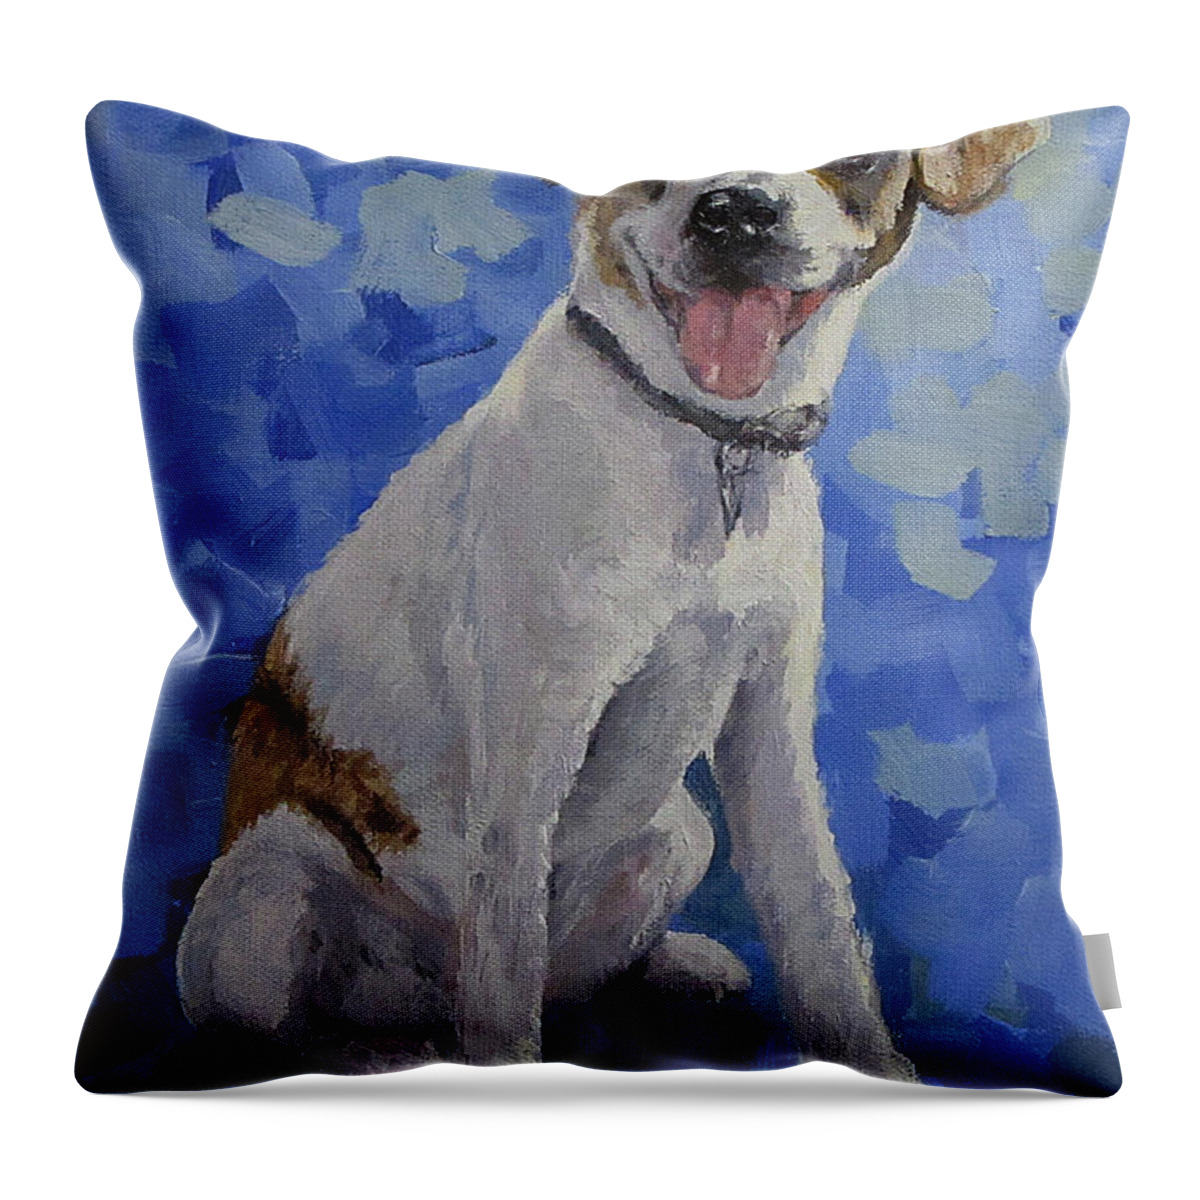 Dog Throw Pillow featuring the painting Jackaroo - A pet portrait by Karen Ilari